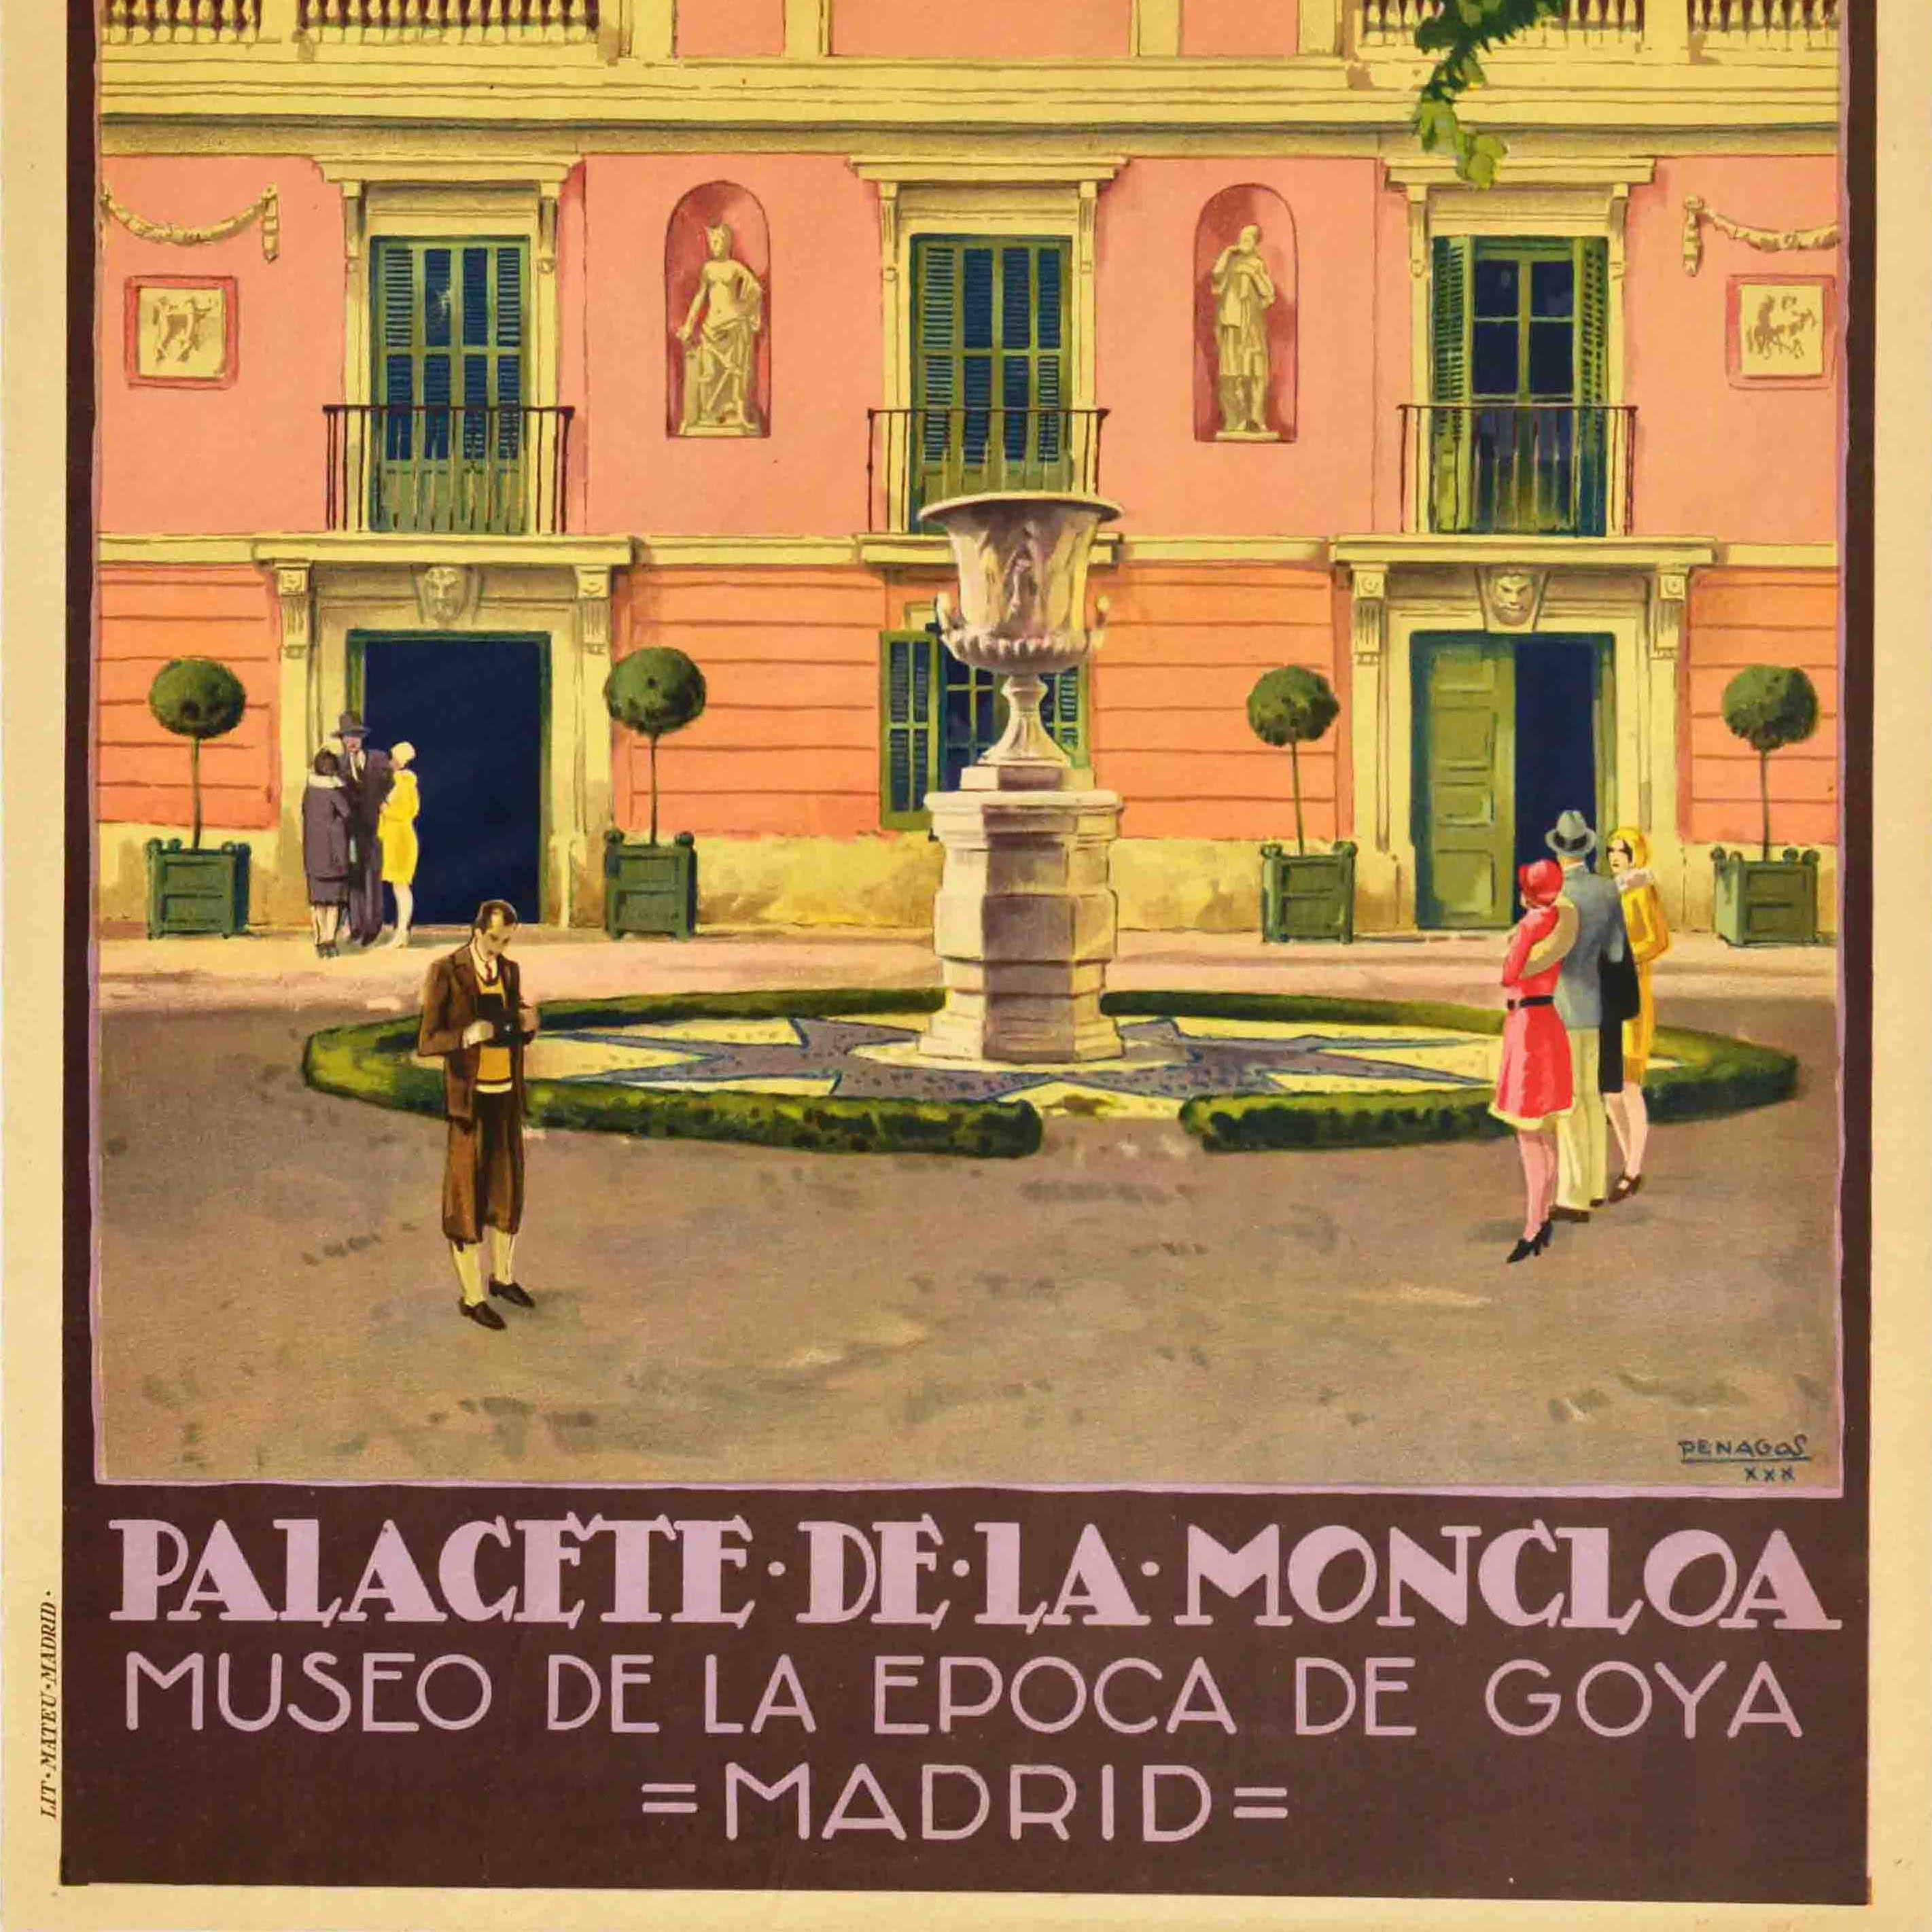 Affiche de voyage originale d'époque publiée par l'office national du tourisme espagnol Patronato Nacional del Turismo PNT à la suite de la restauration du Palais de la Moncloa en 1929 et de sa réouverture en tant que musée - Palacete de la Moncloa